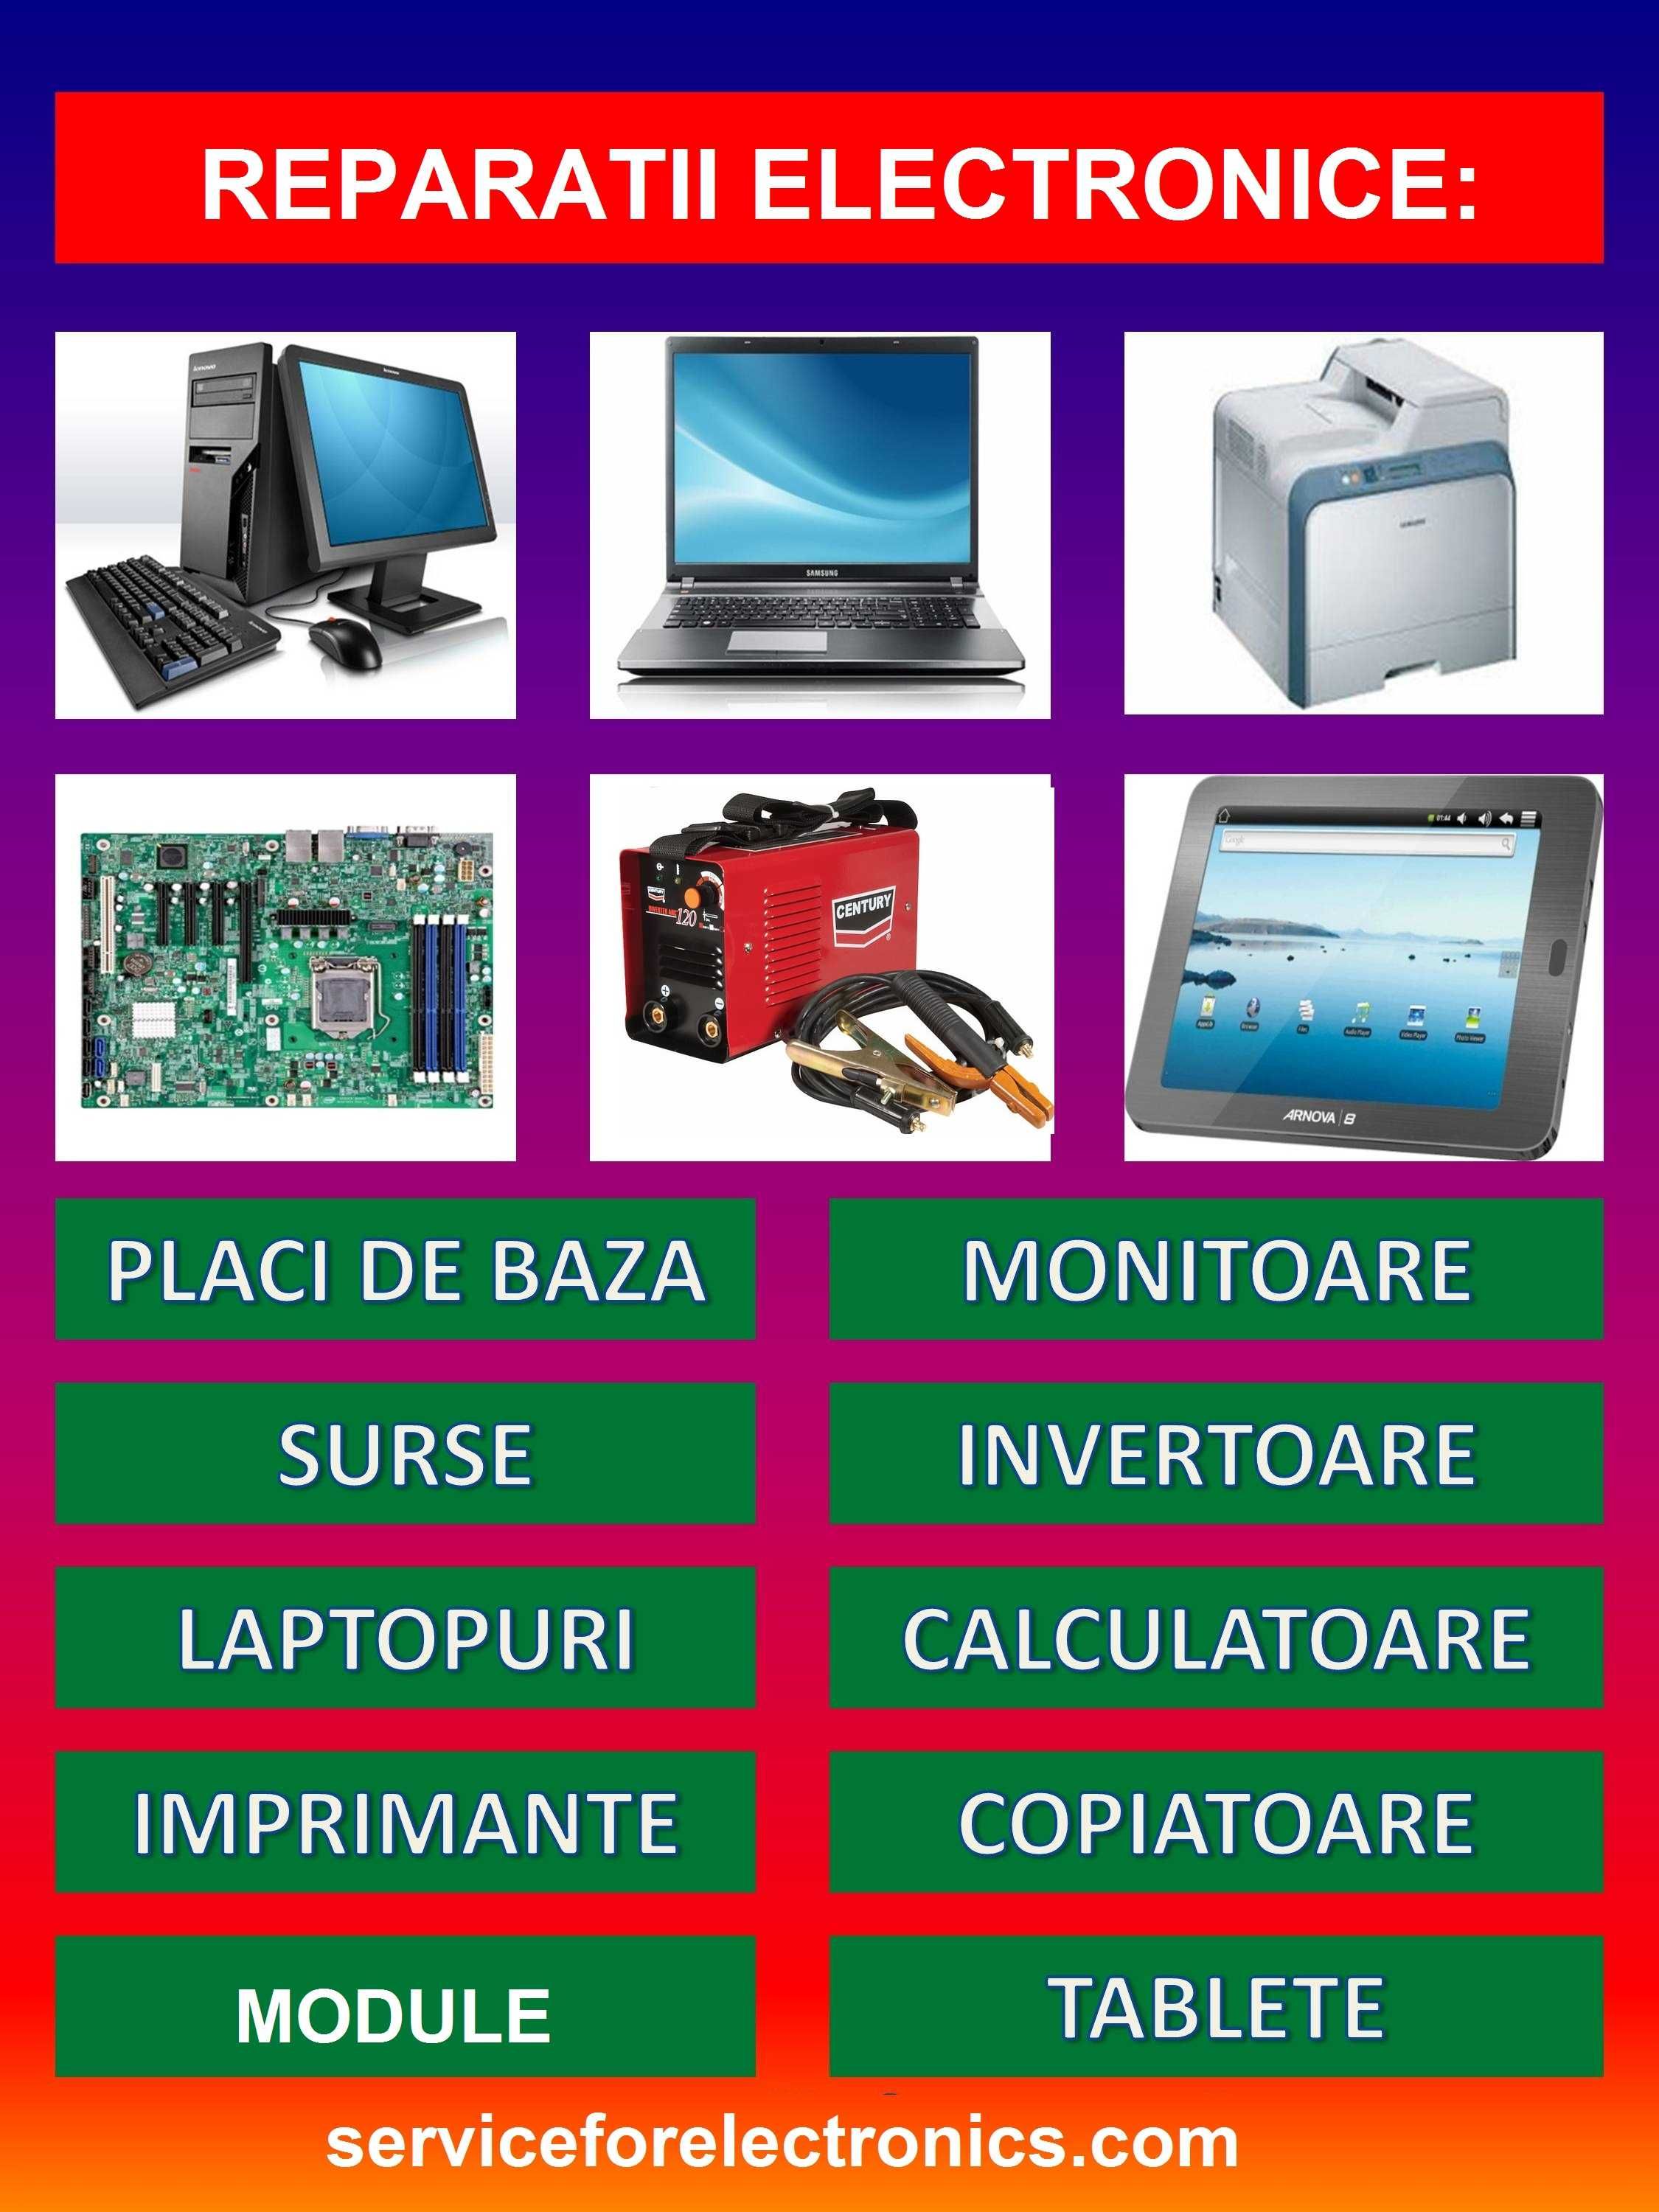 Reparatii electronice, electrocasnice, calculatoare, laptopuri